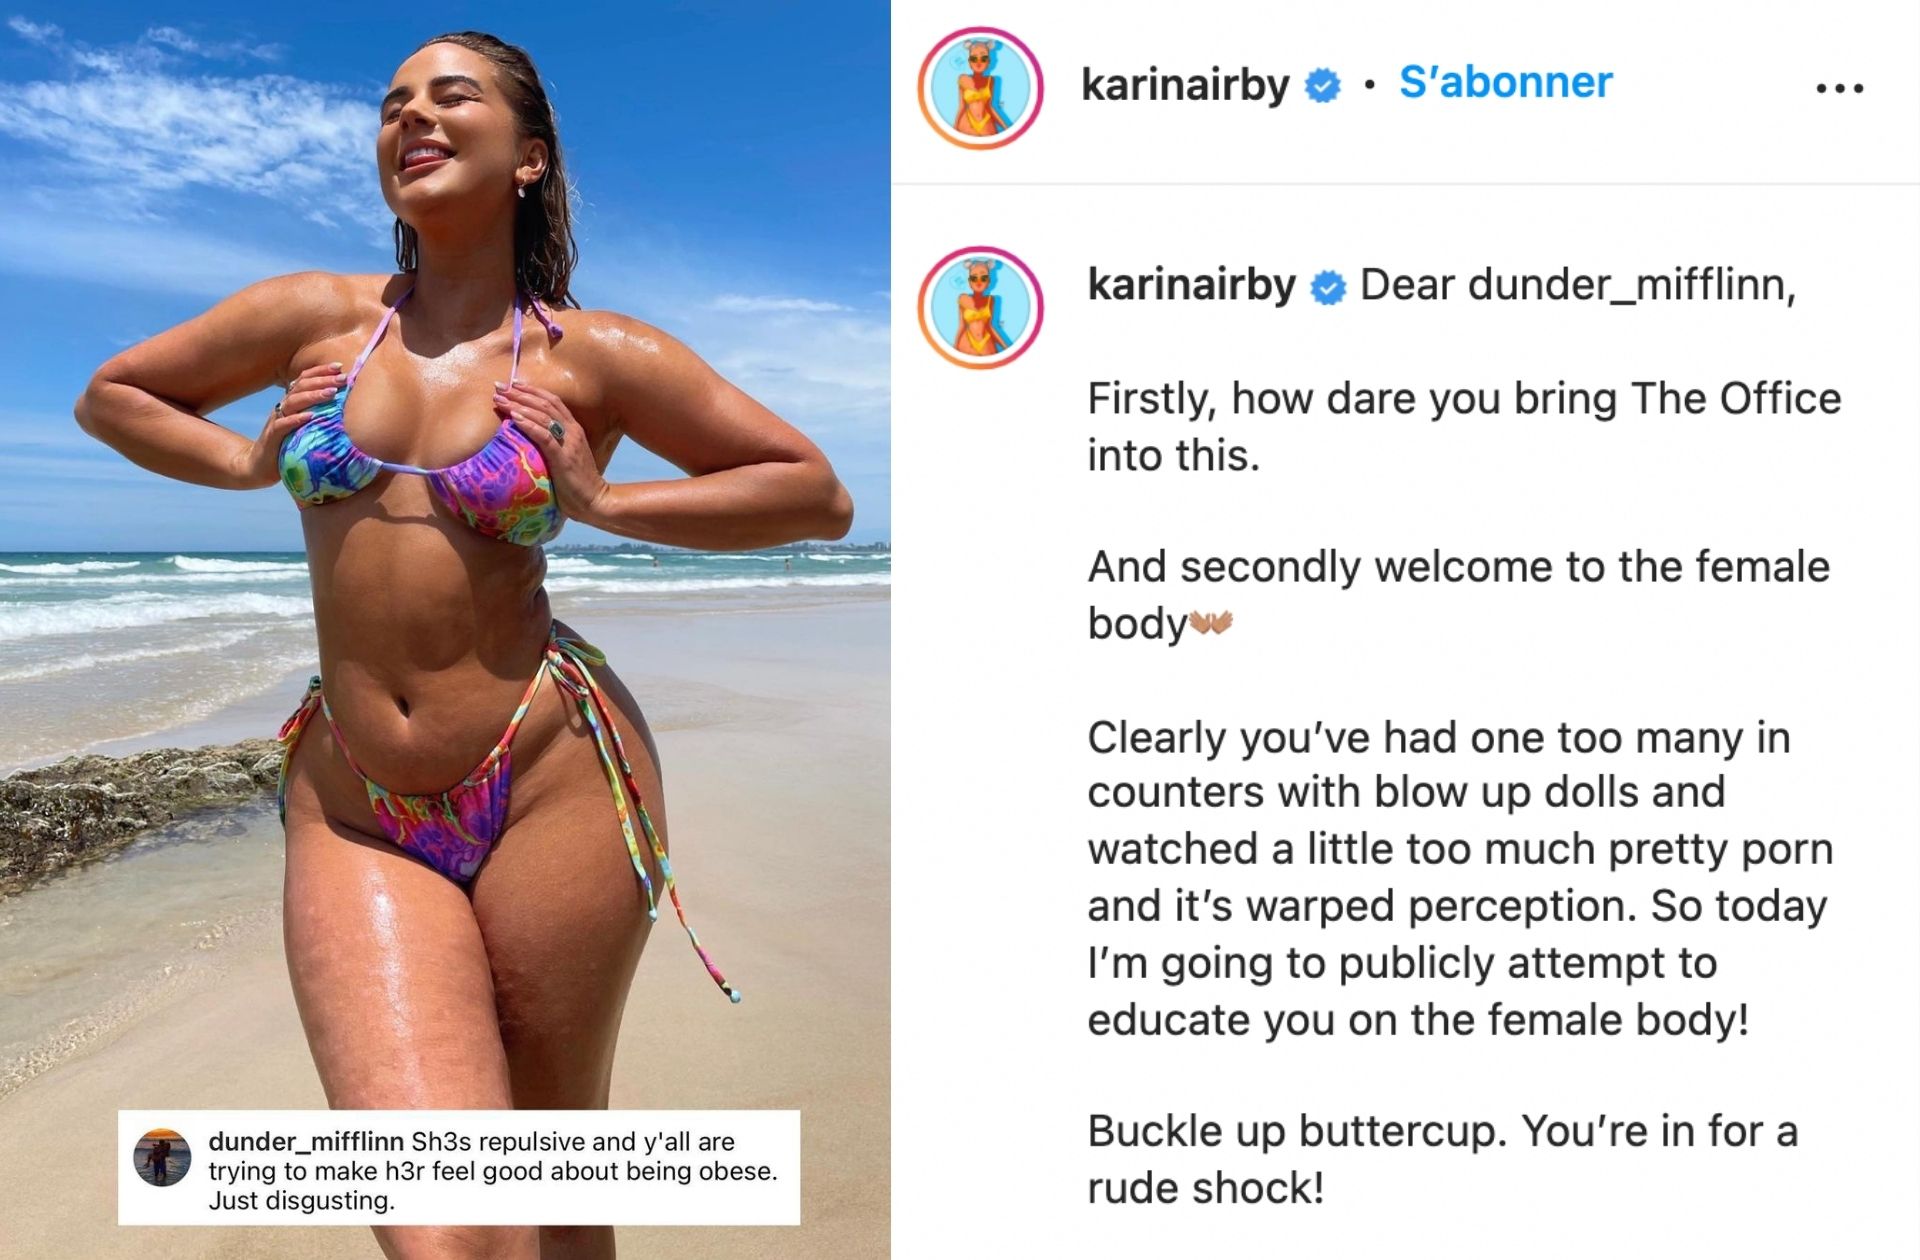 « Bienvenue face à un corps féminin » répond @KarinaIrby au message grossophobe et misogyne d'un hater anonyme.